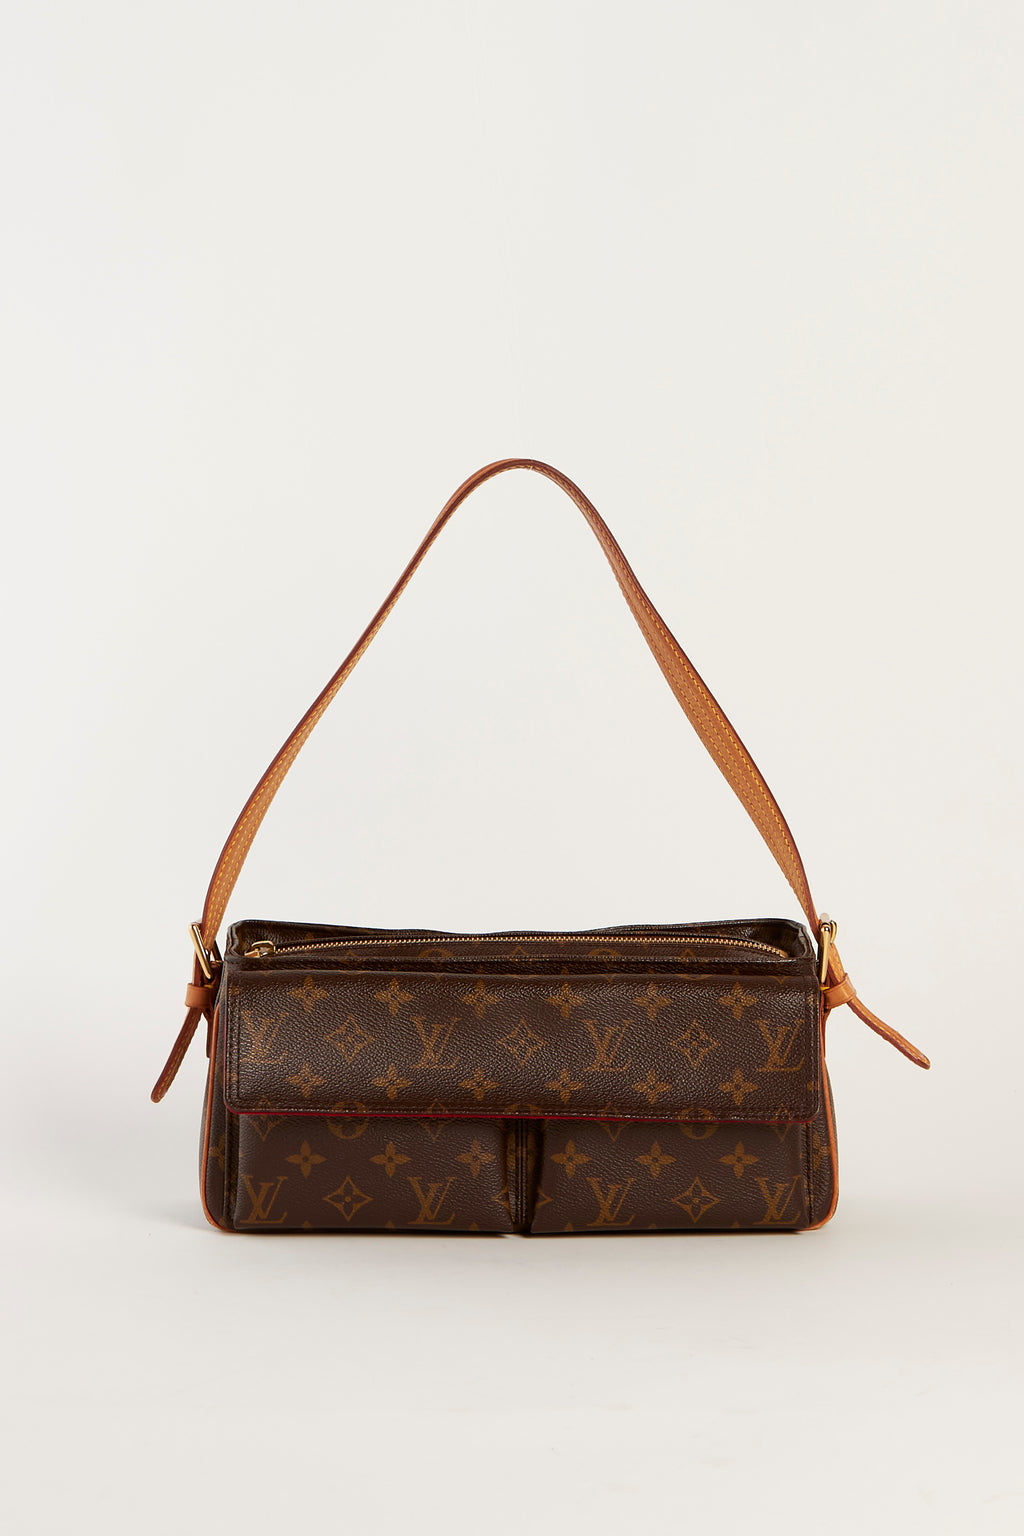 RARE Louis Vuitton Viva Cite MM Shoulder Bag